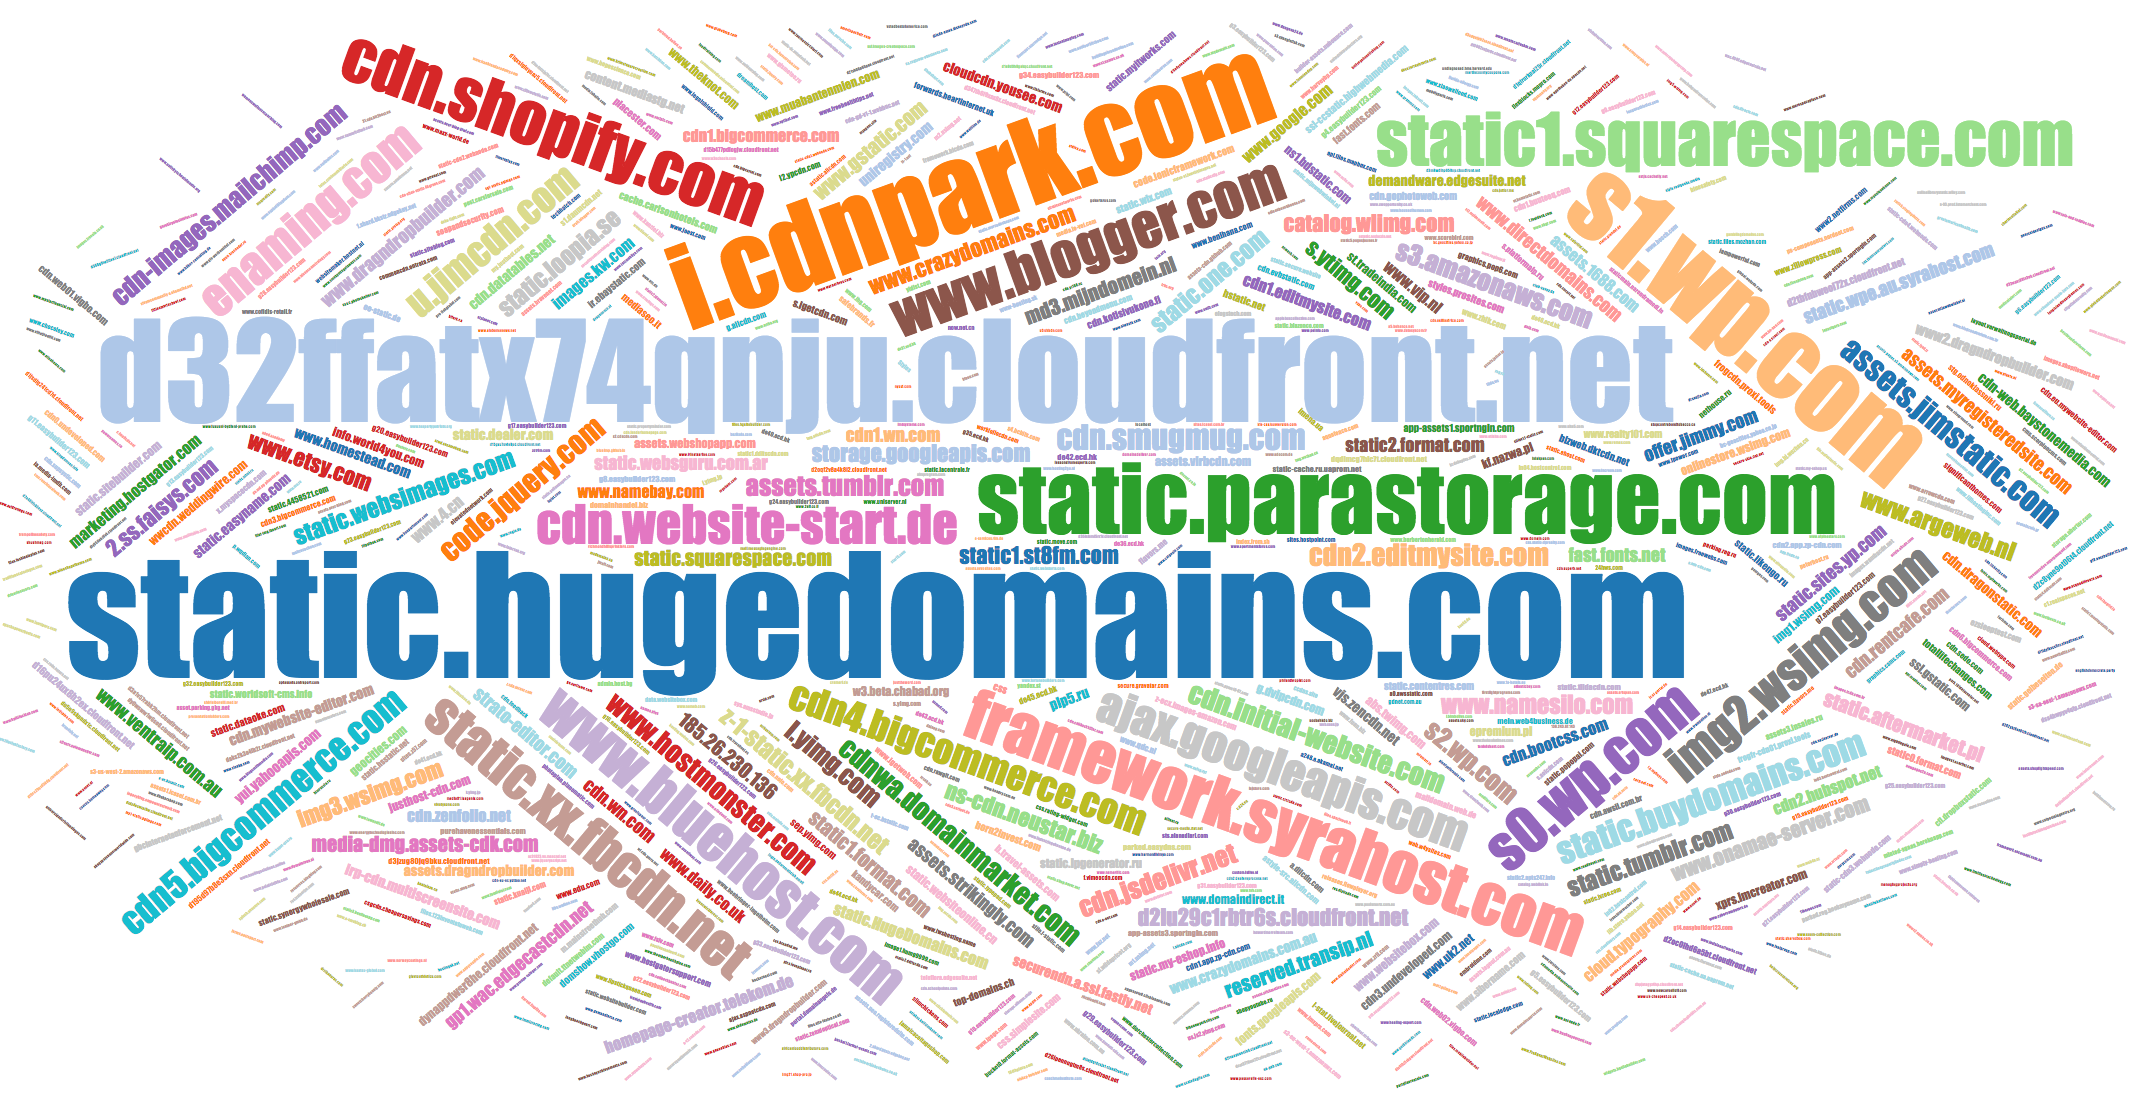 Popular names of CSS domains d1lxhc4jvstzrp.cloudfront.net, static1.squarespace.com, etc.